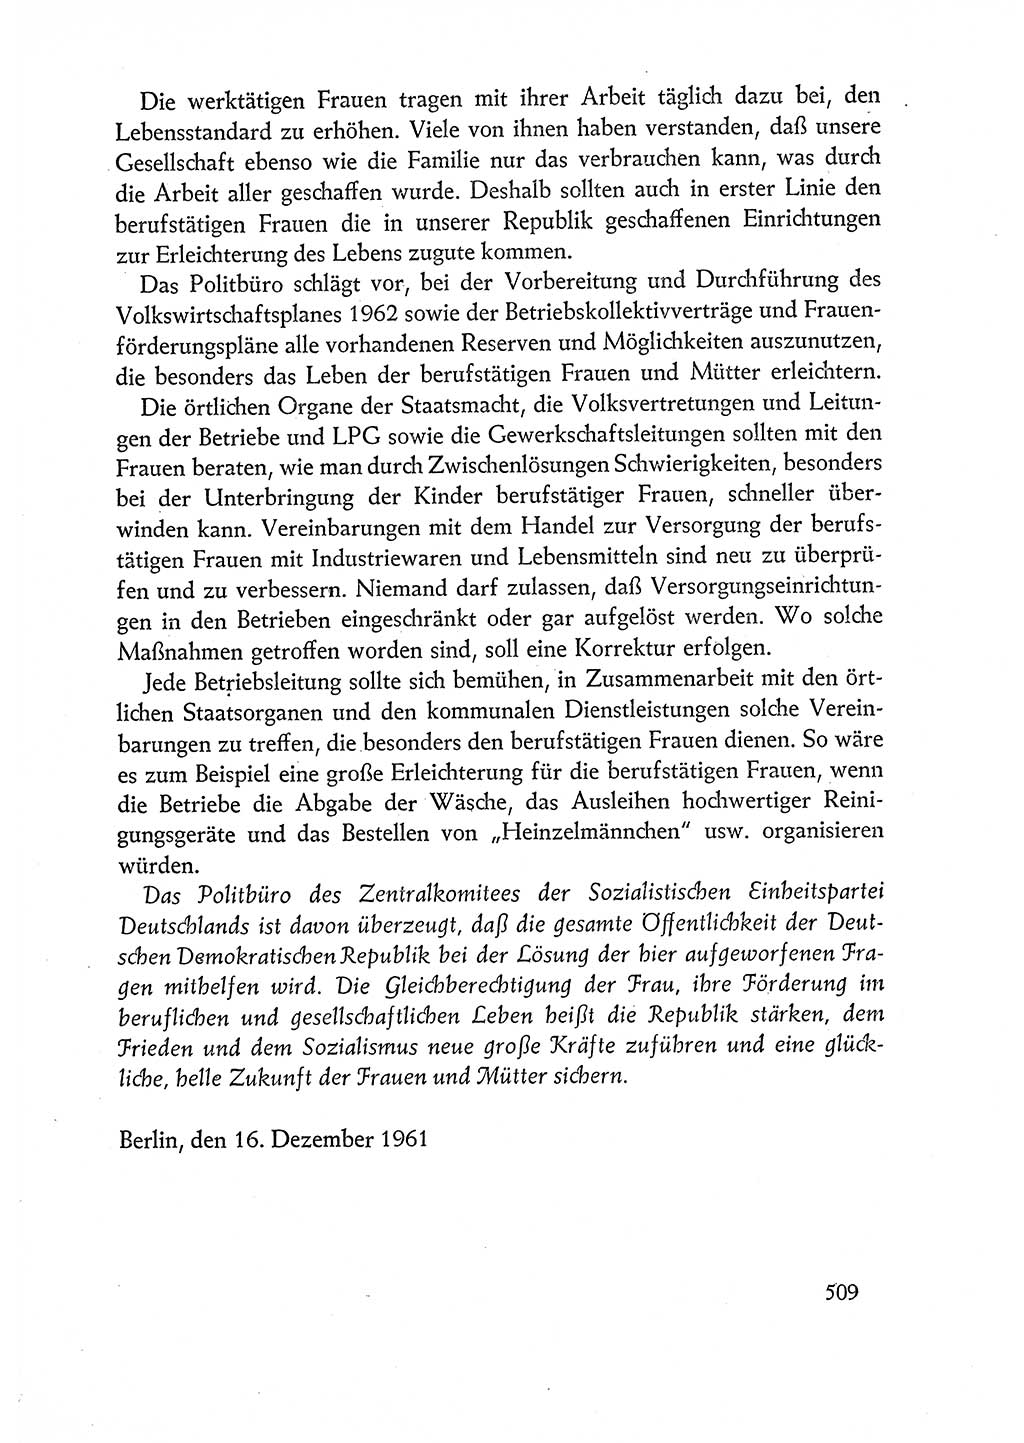 Dokumente der Sozialistischen Einheitspartei Deutschlands (SED) [Deutsche Demokratische Republik (DDR)] 1960-1961, Seite 509 (Dok. SED DDR 1960-1961, S. 509)